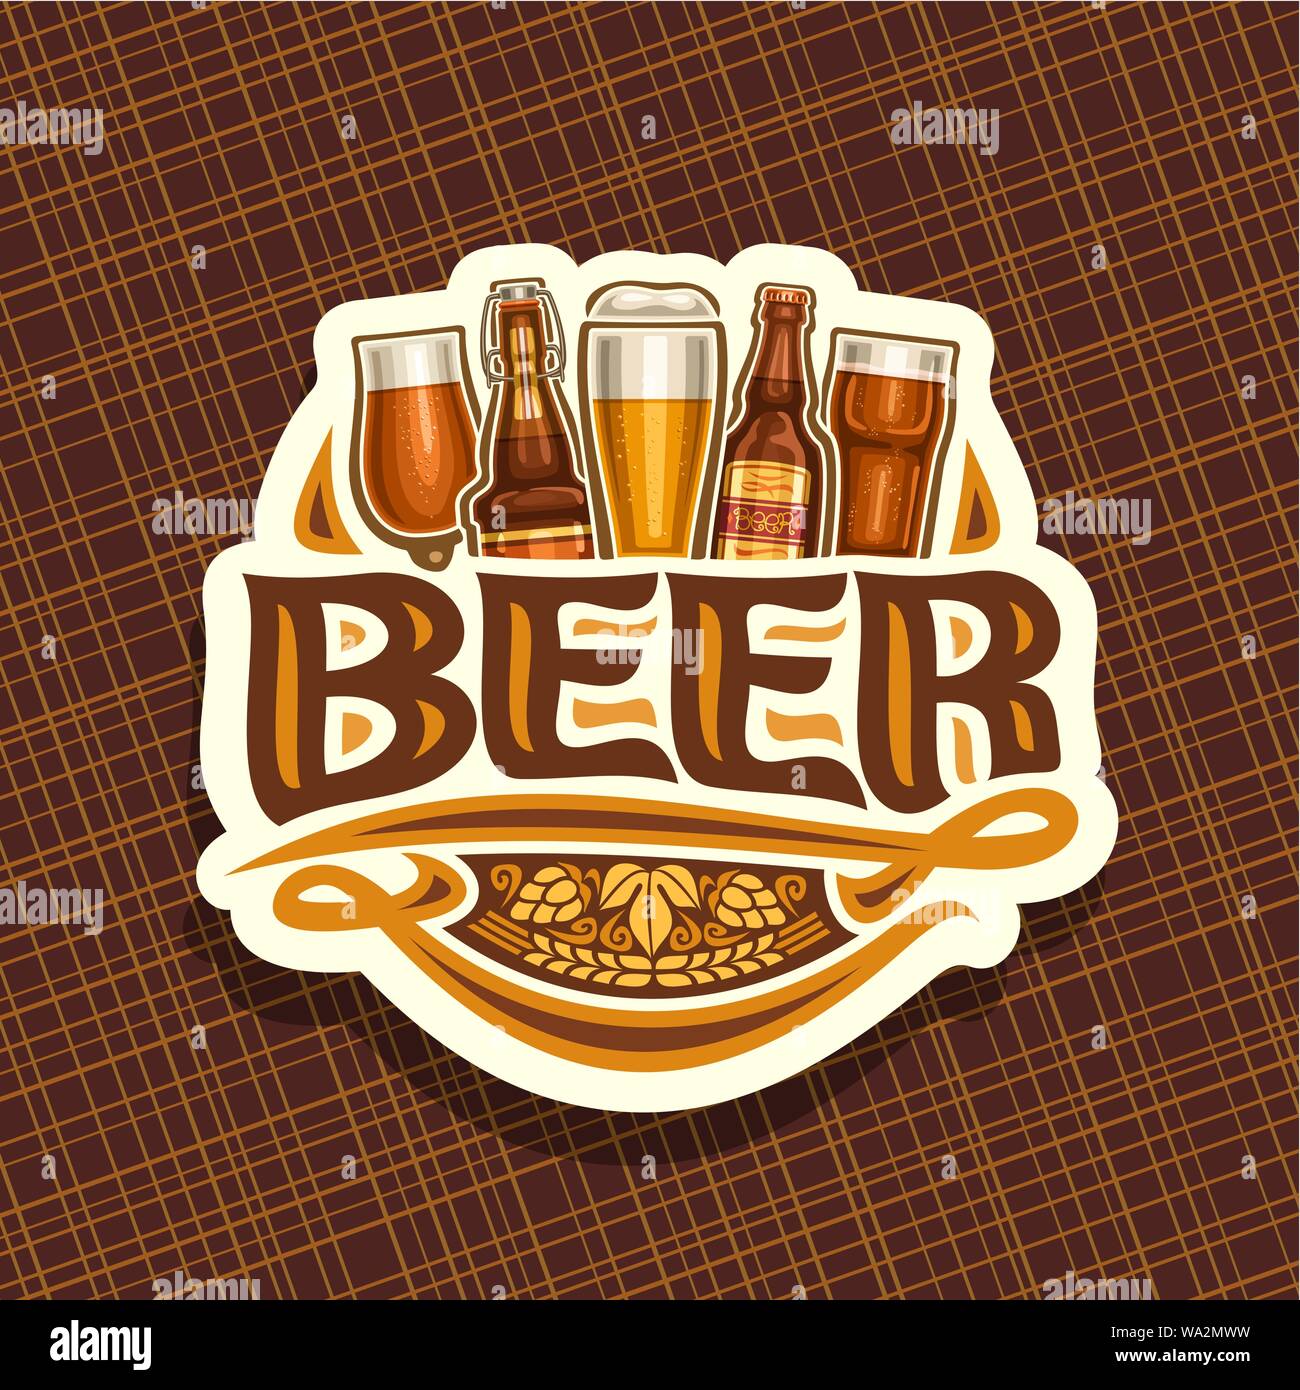 German beer bottle Stock Vector Images - Alamy